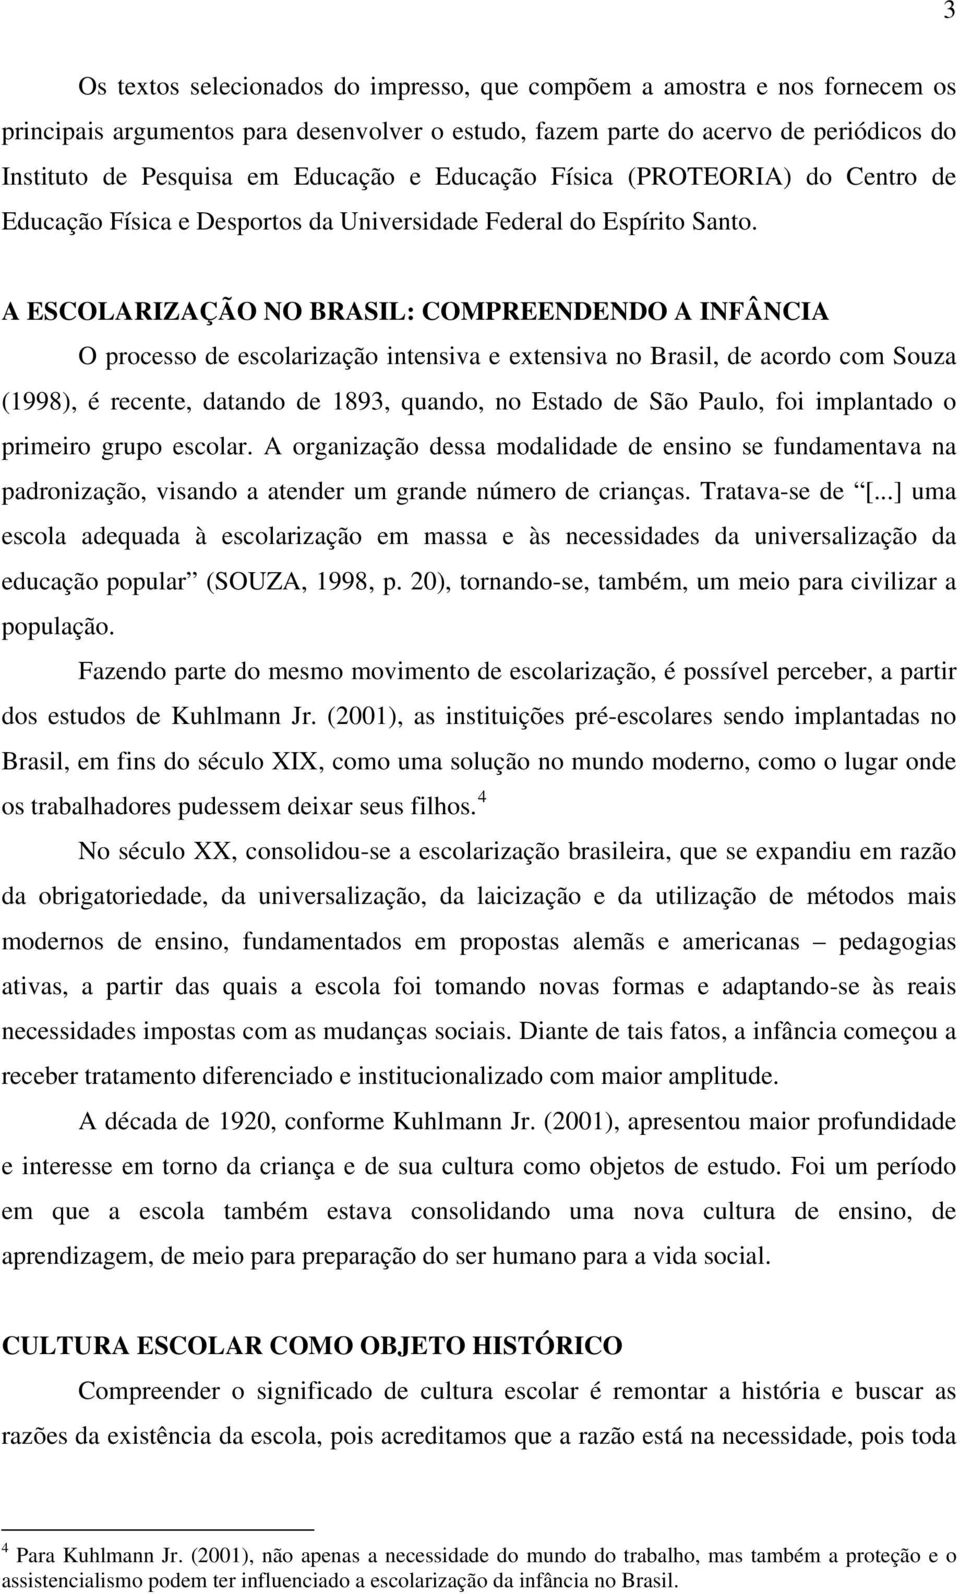 A ESCOLARIZAÇÃO NO BRASIL: COMPREENDENDO A INFÂNCIA O processo de escolarização intensiva e extensiva no Brasil, de acordo com Souza (1998), é recente, datando de 1893, quando, no Estado de São